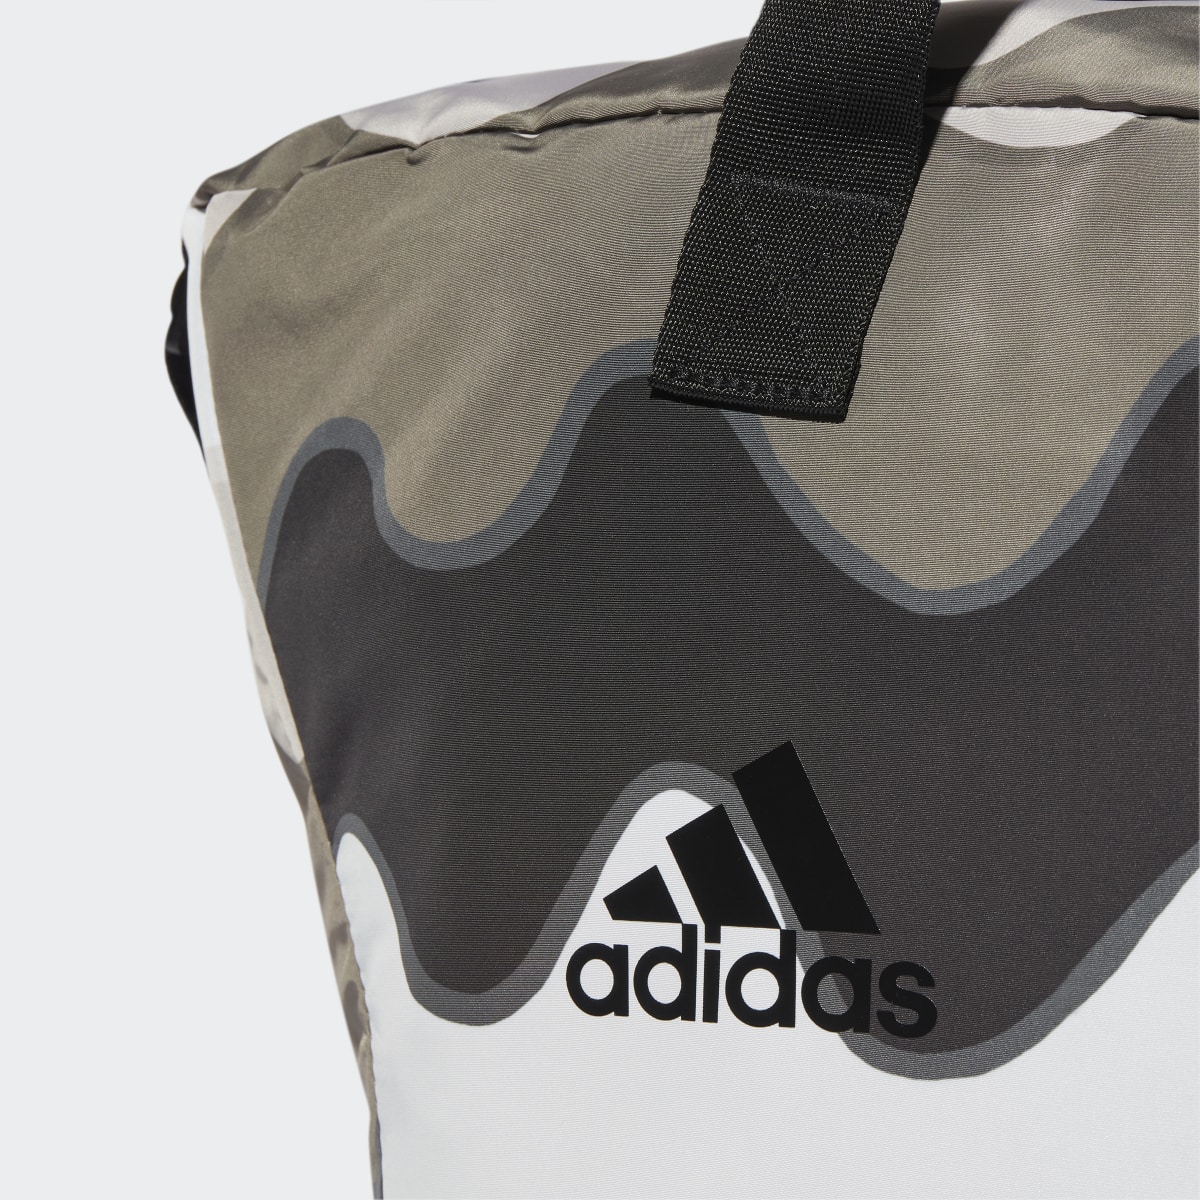 Adidas x Marimekko Shopper Designed to Move Training Bag. 6